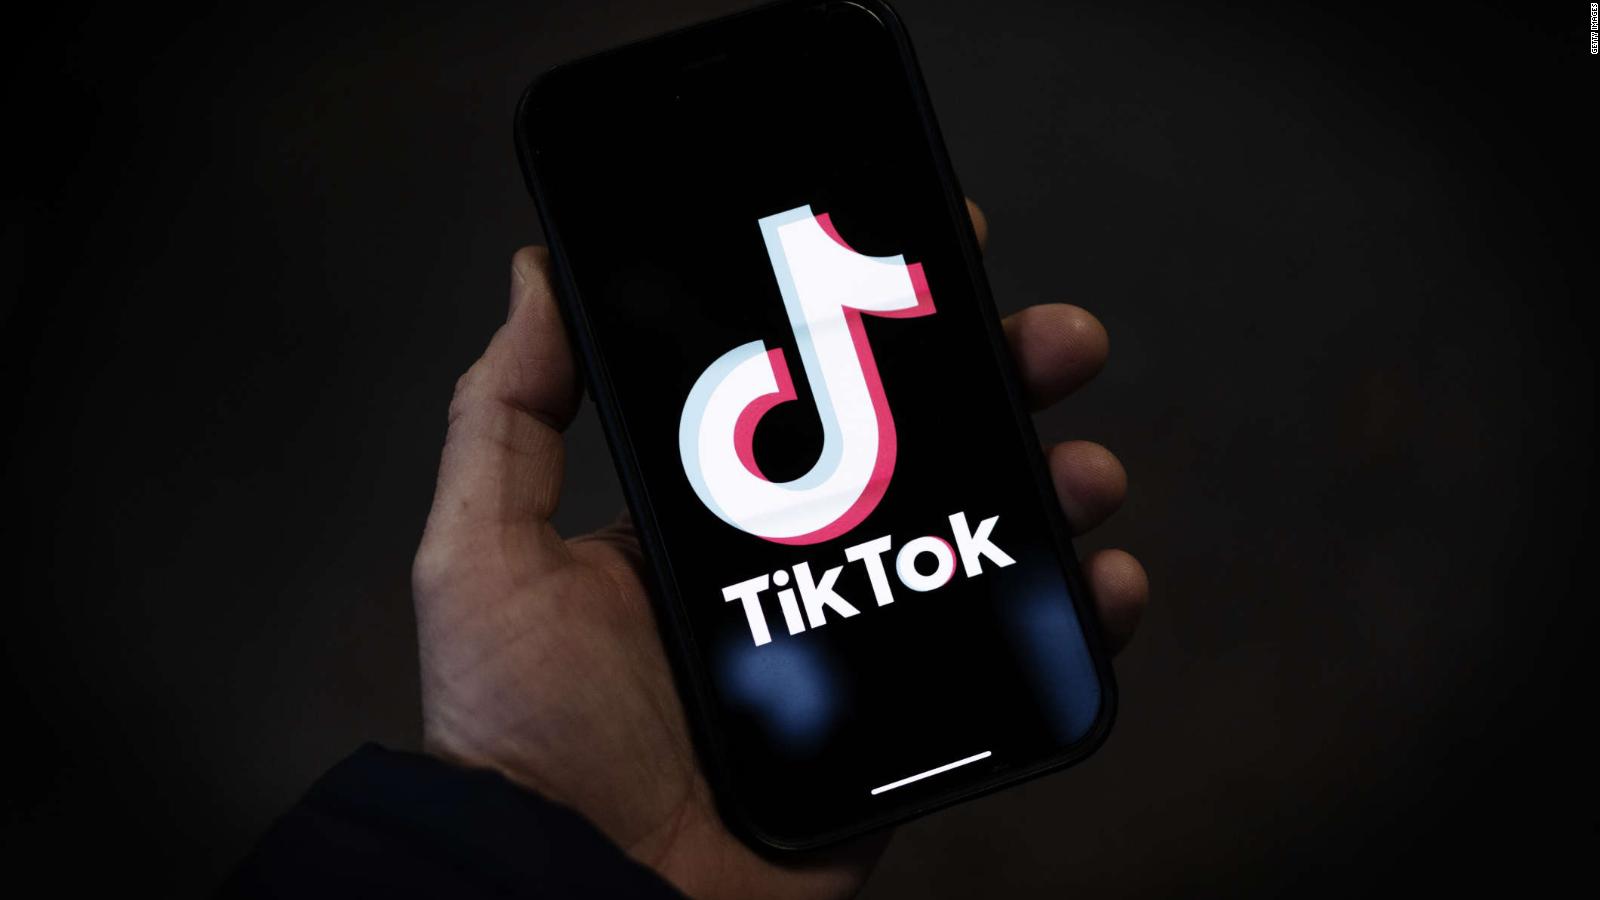 El propietario chino de TikTok niega estar dispuesto a vender la aplicación